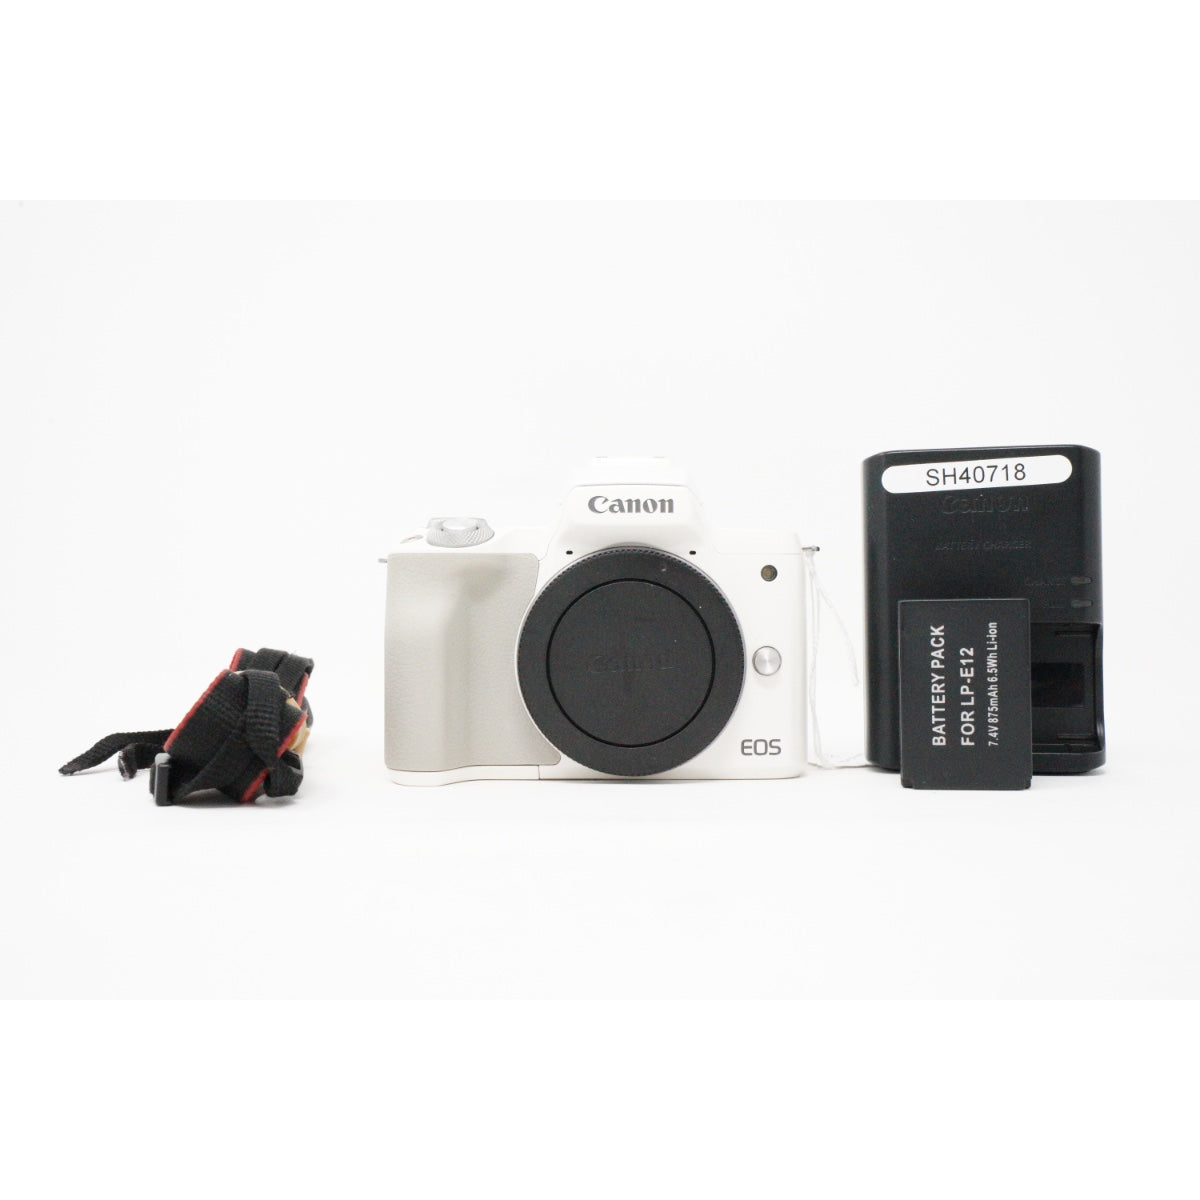 Used canon EOS M50 digital camera body in White